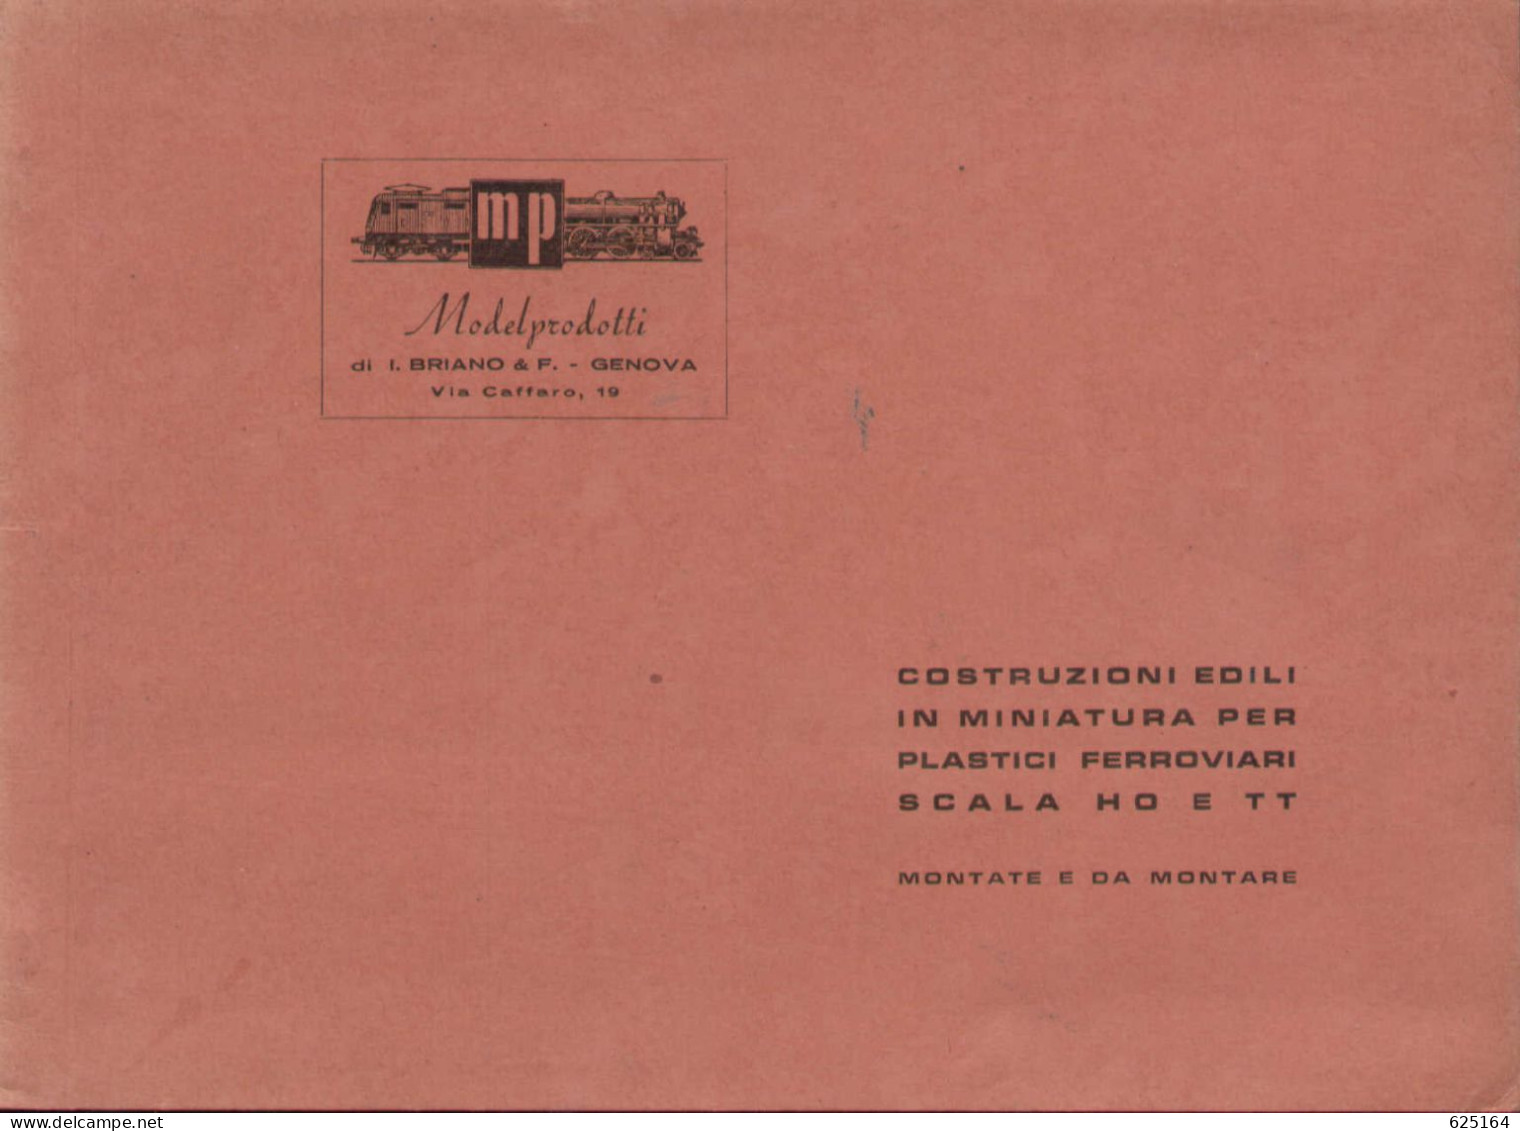 Catalogue MP ModelProdotti 1955? Ed. Italo Briano Genova Accessori HO  - En Italien - Ohne Zuordnung